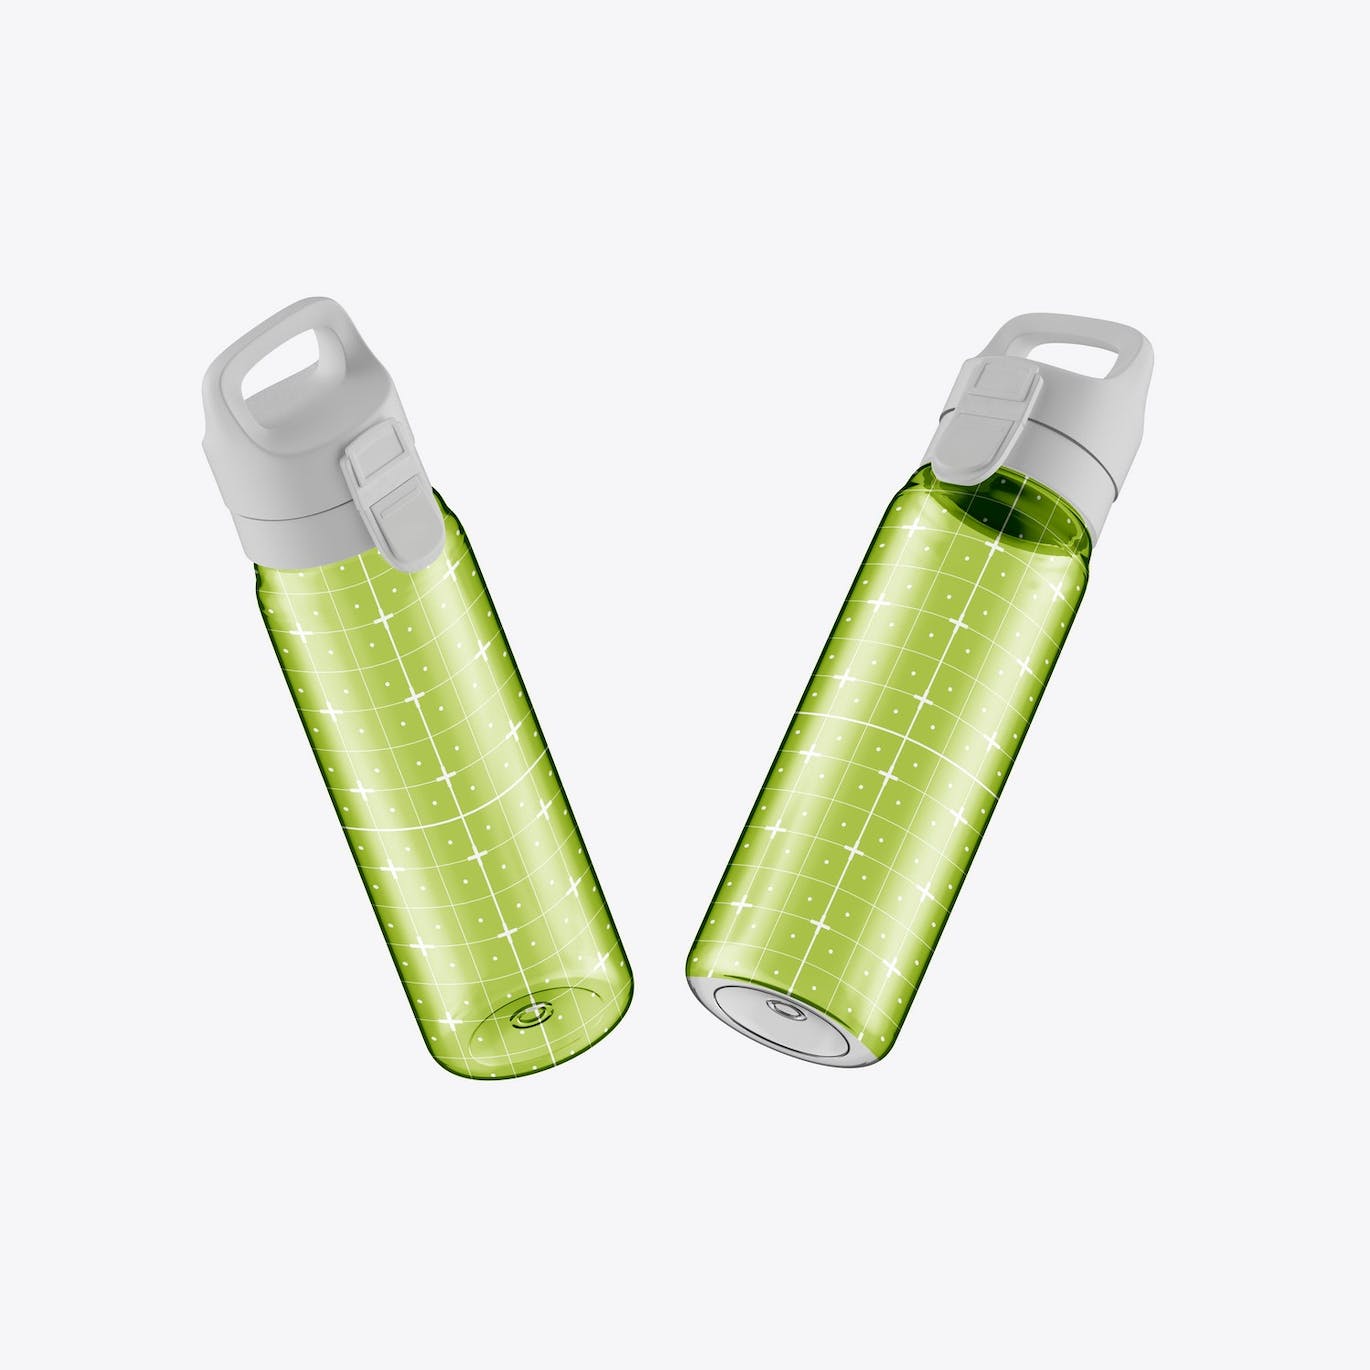 透明塑料运动水瓶设计样机 Sport Bottle Mockup 样机素材 第5张